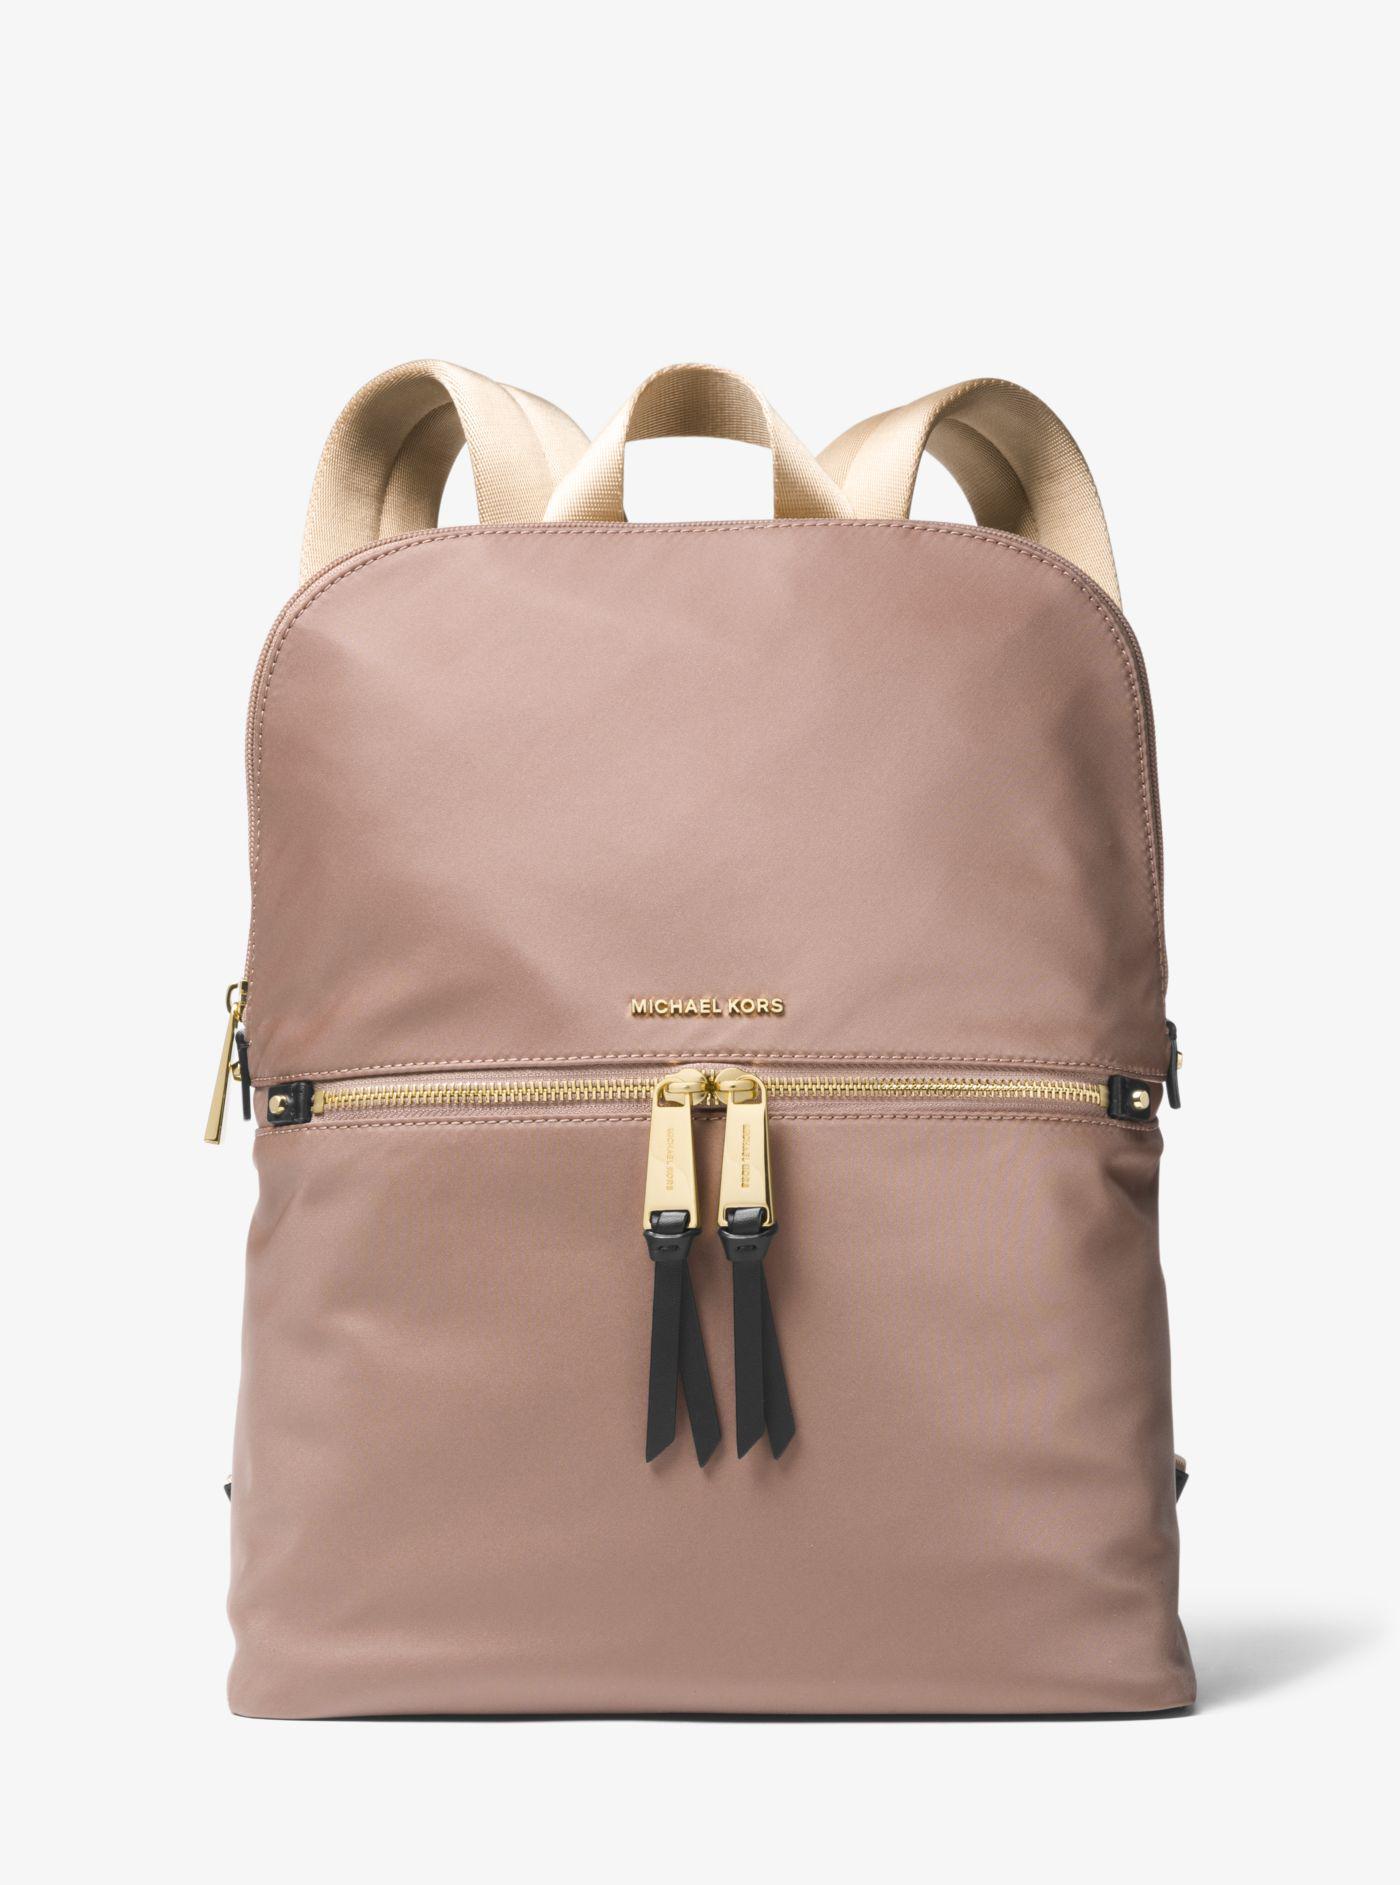 michael kors polly medium nylon backpack